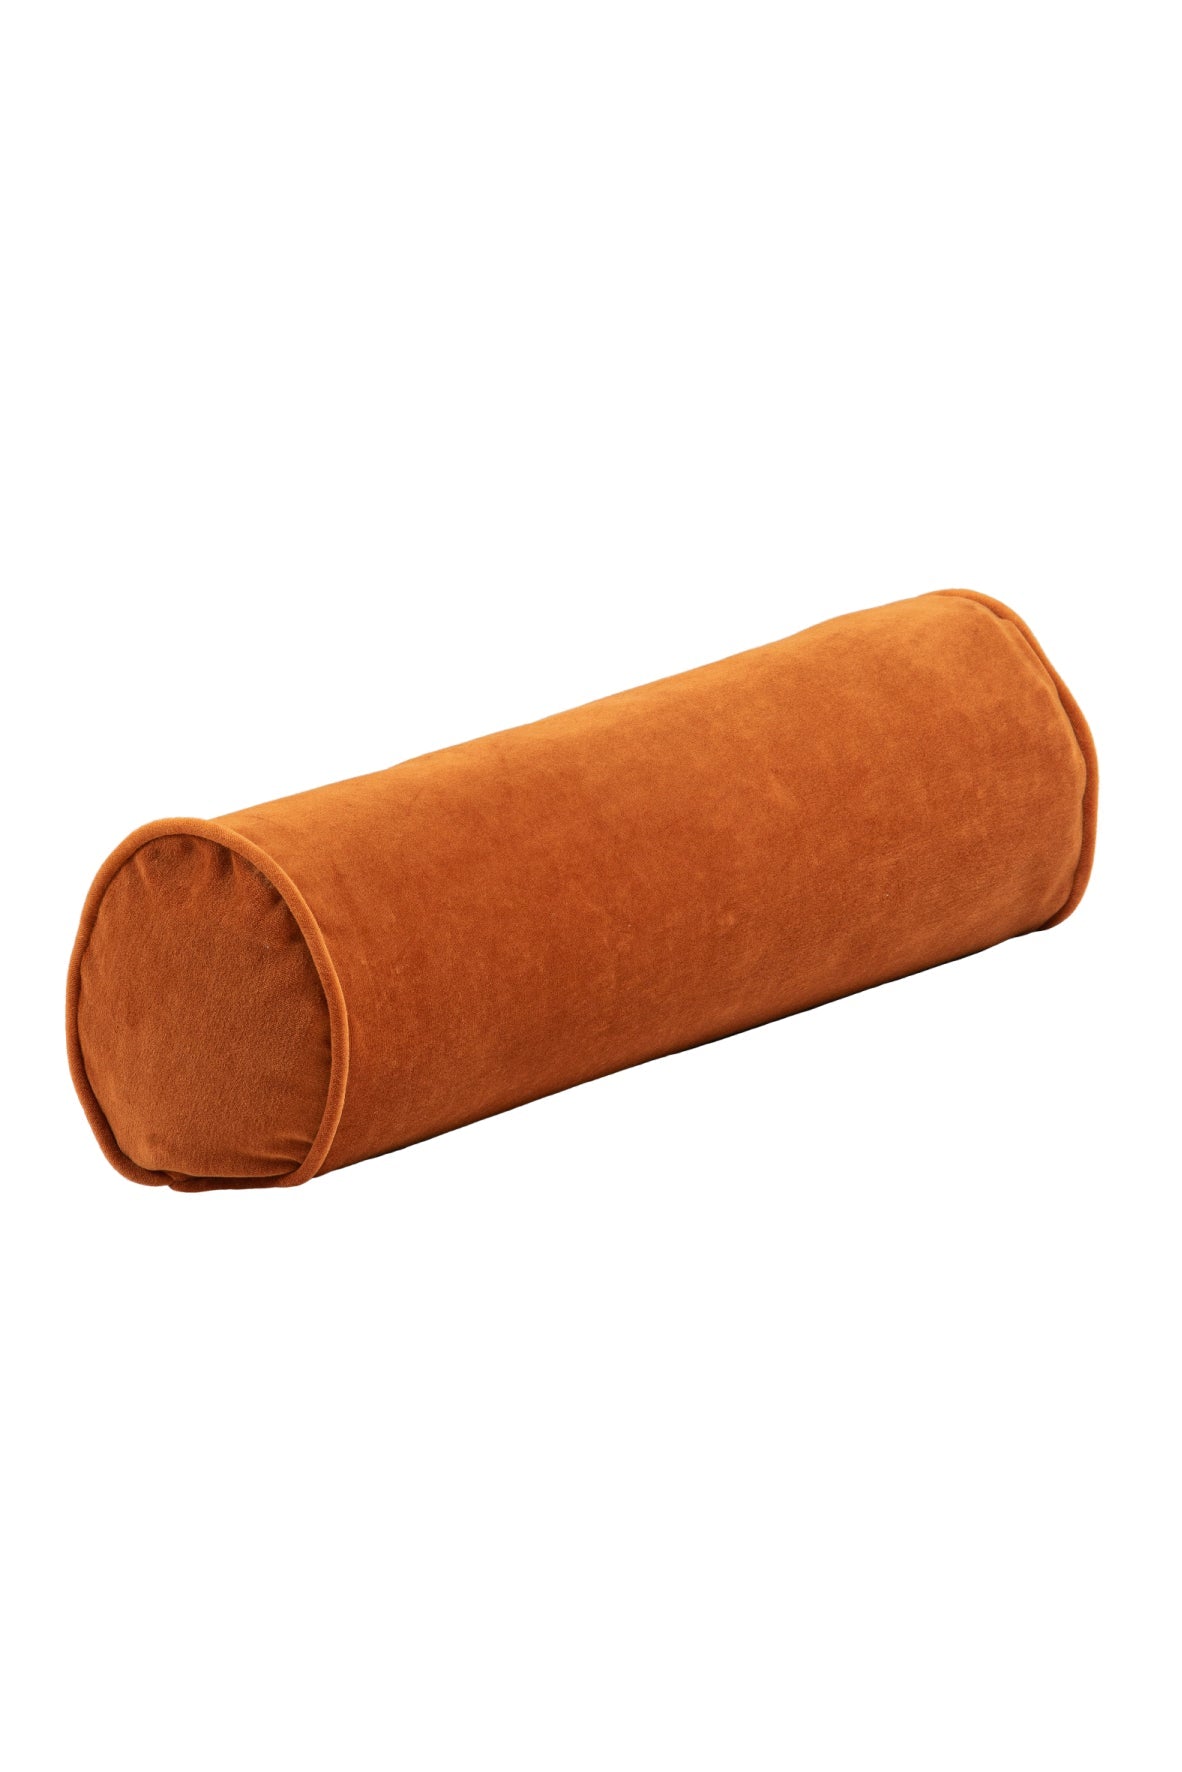 Cinnamon Roll Cushion Cushions Wigiwama 